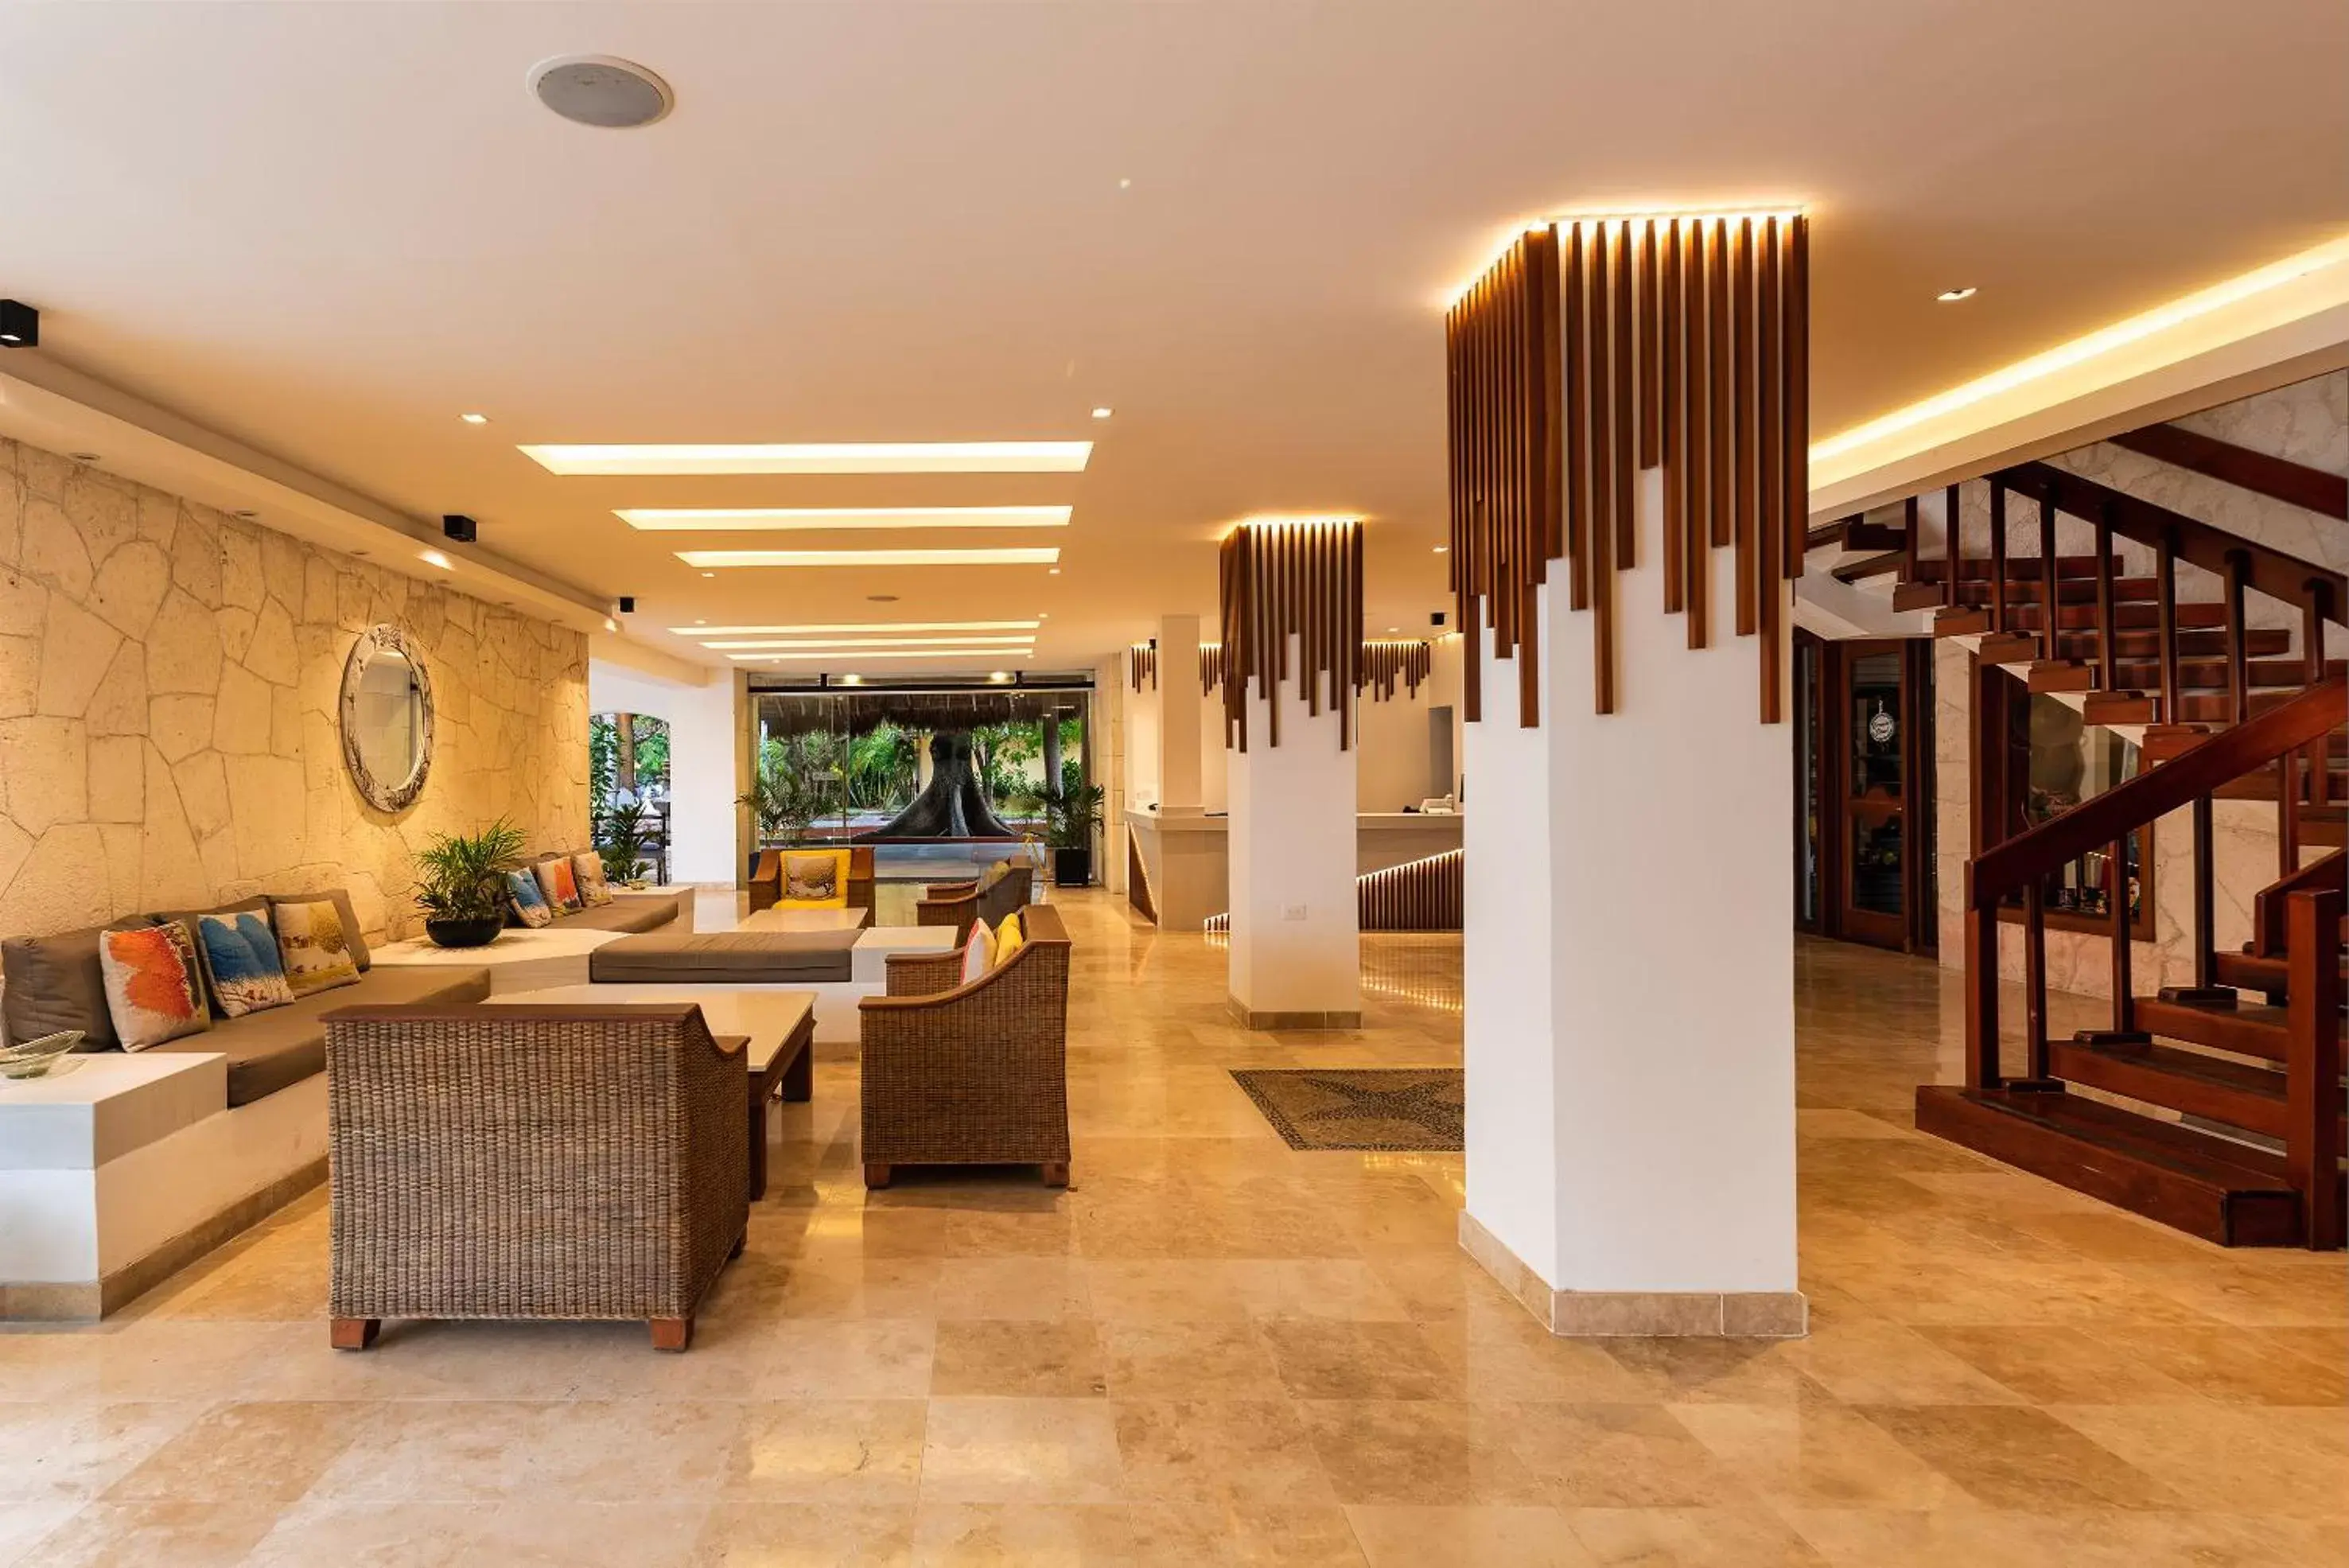 Lobby or reception, Lobby/Reception in Playa Azul Cozumel